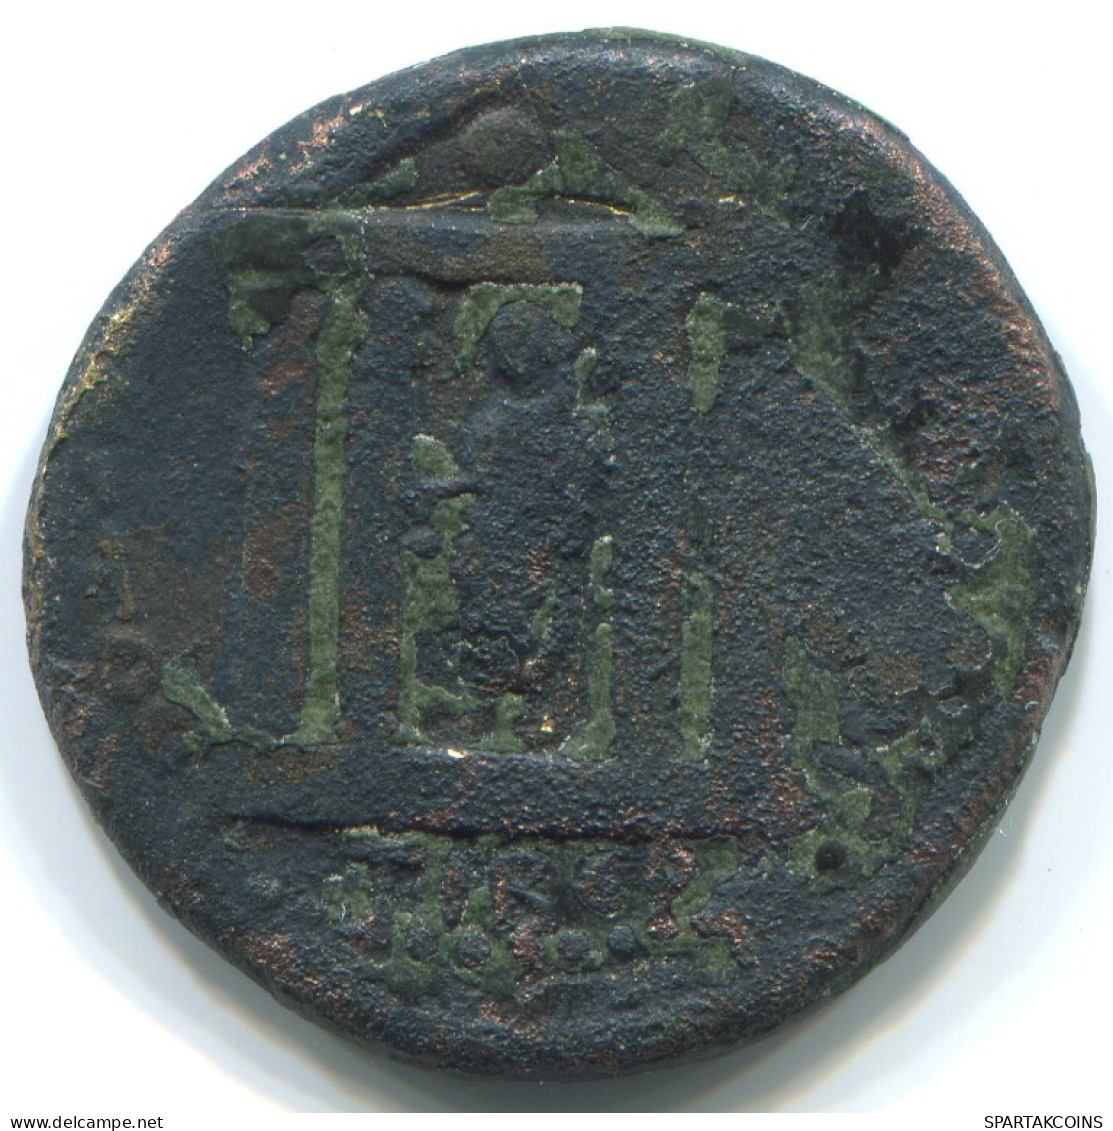 ROMAN PROVINCIAL Auténtico Original Antiguo Monedas 6.3g/22mm #ANT1841.47.E.A - Röm. Provinz